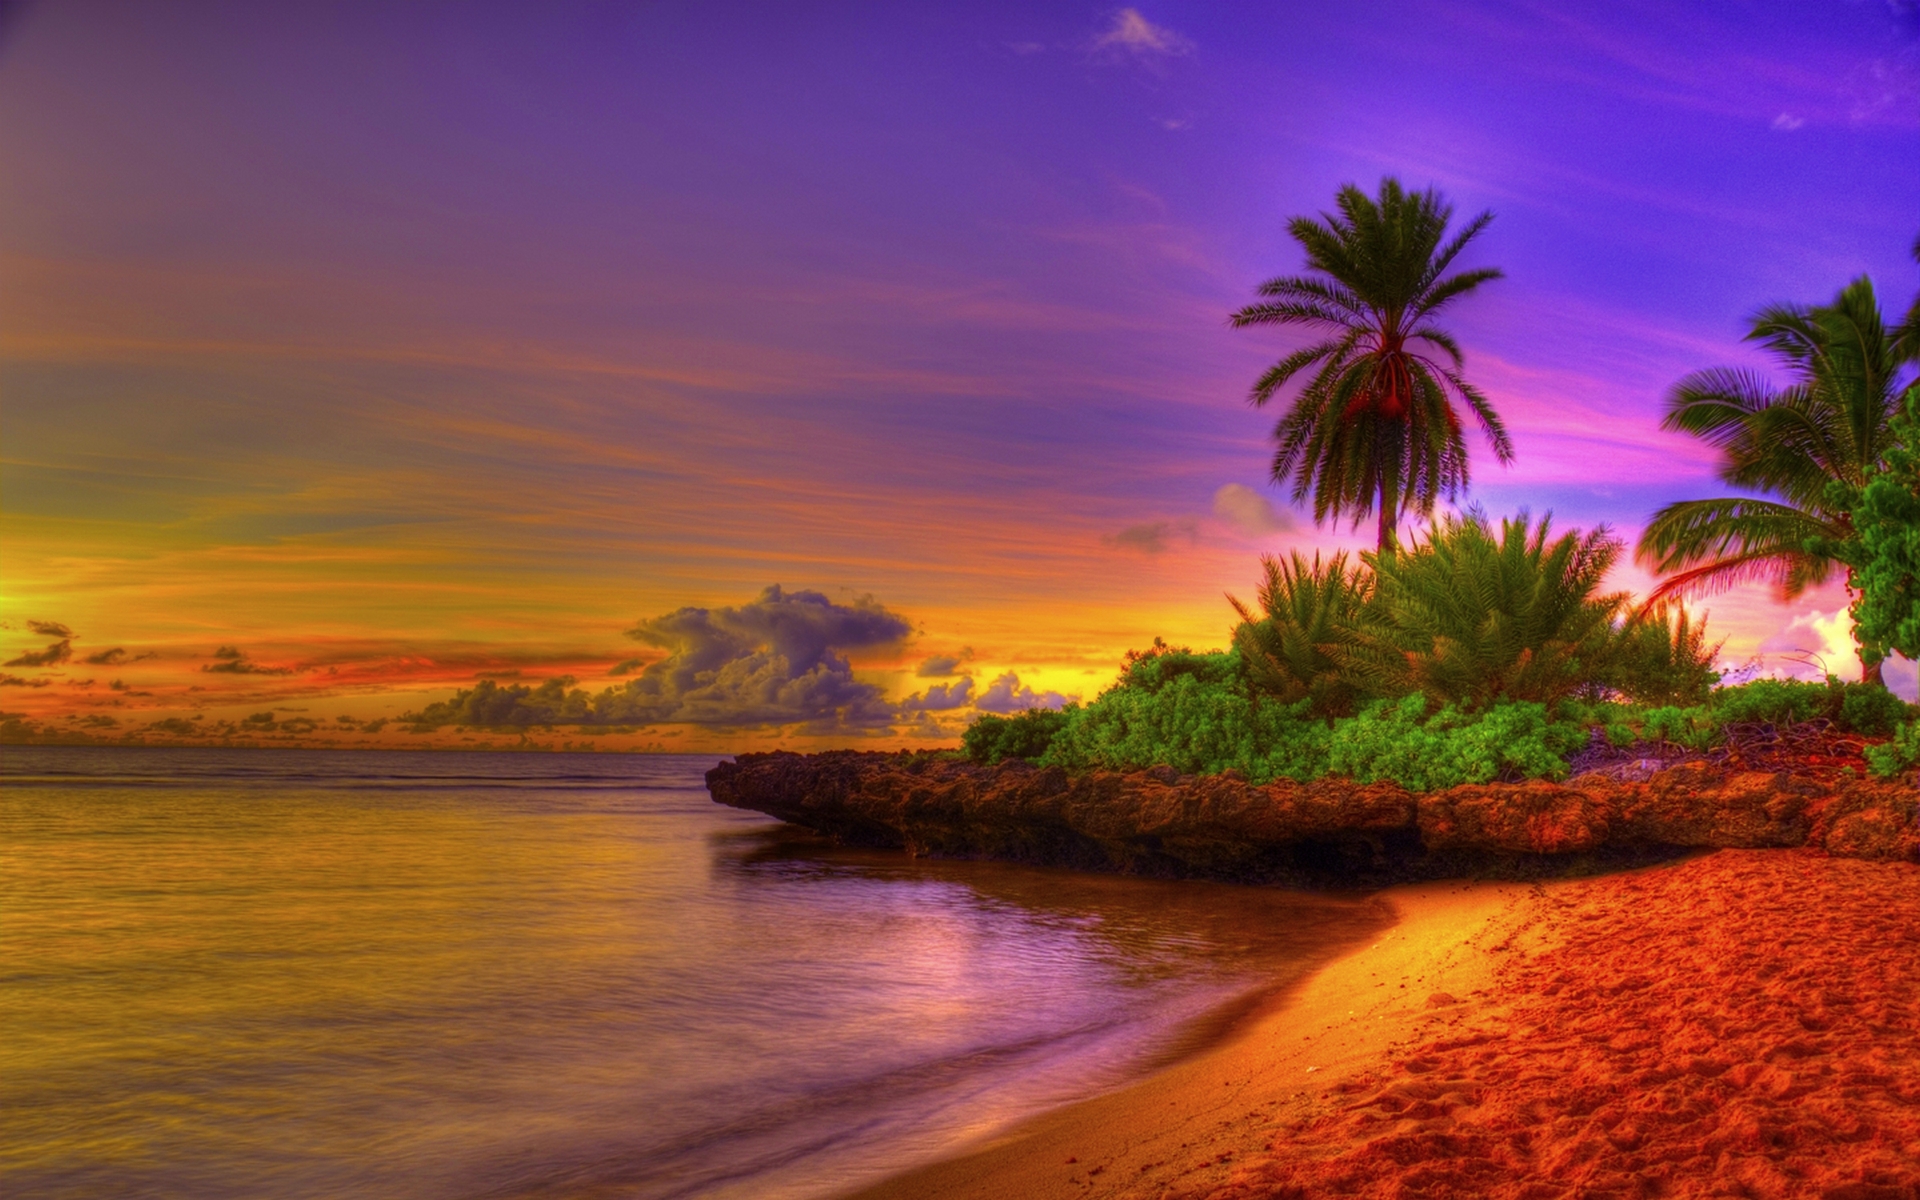  tropical beach image beautiful tropical beach sunset tropical beach